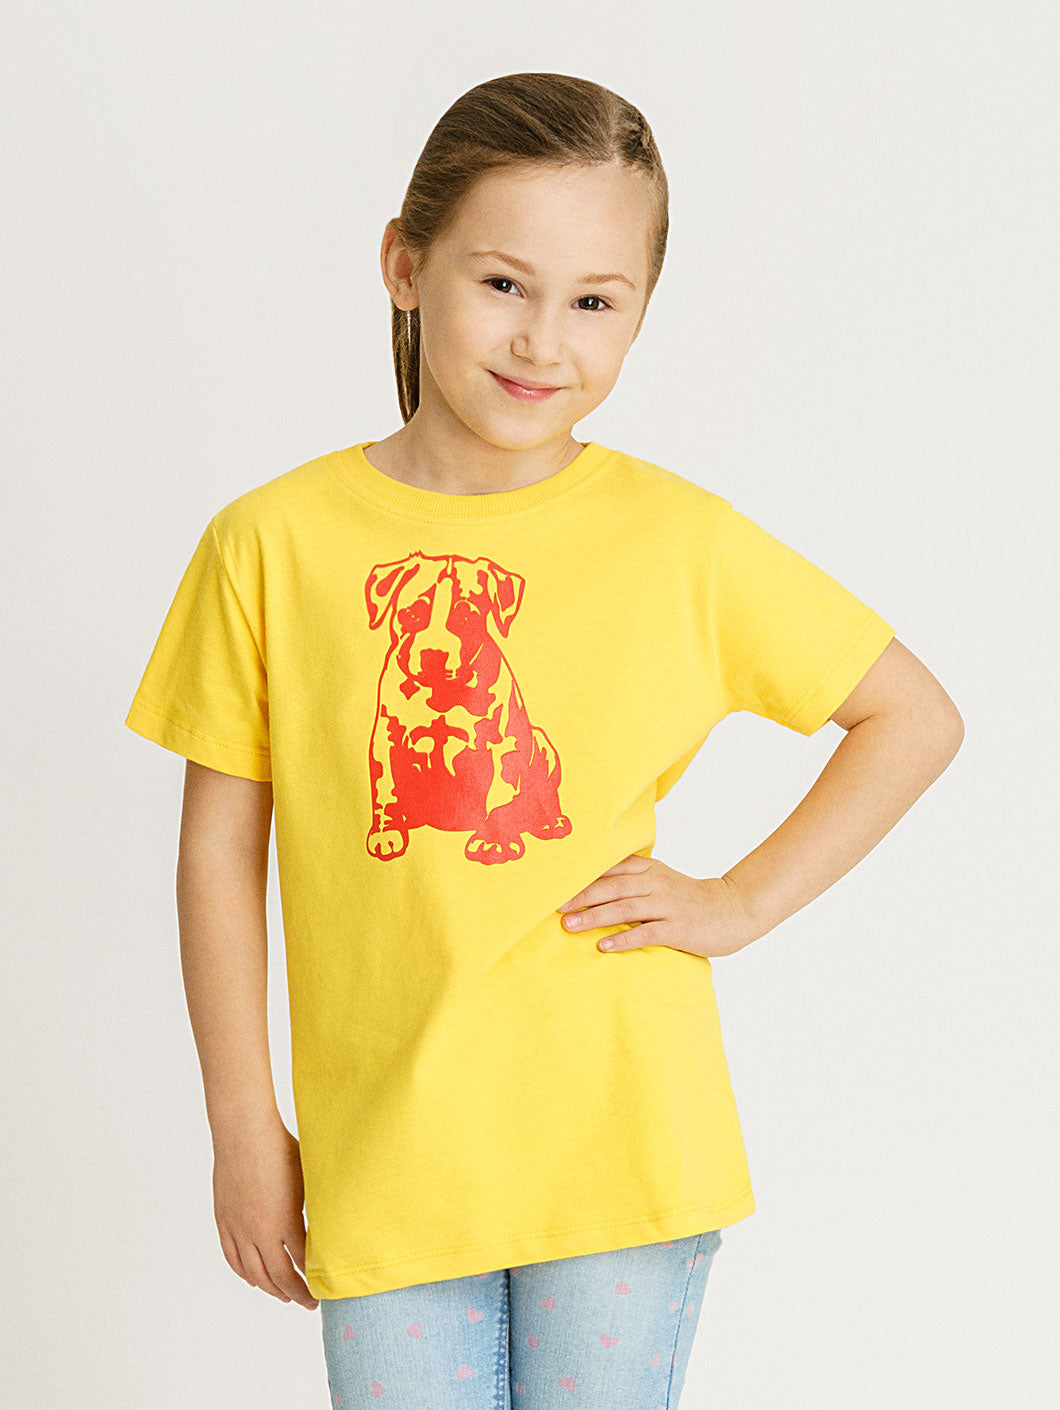 Babystaff Kids Logo T-Shirt gelb - 11